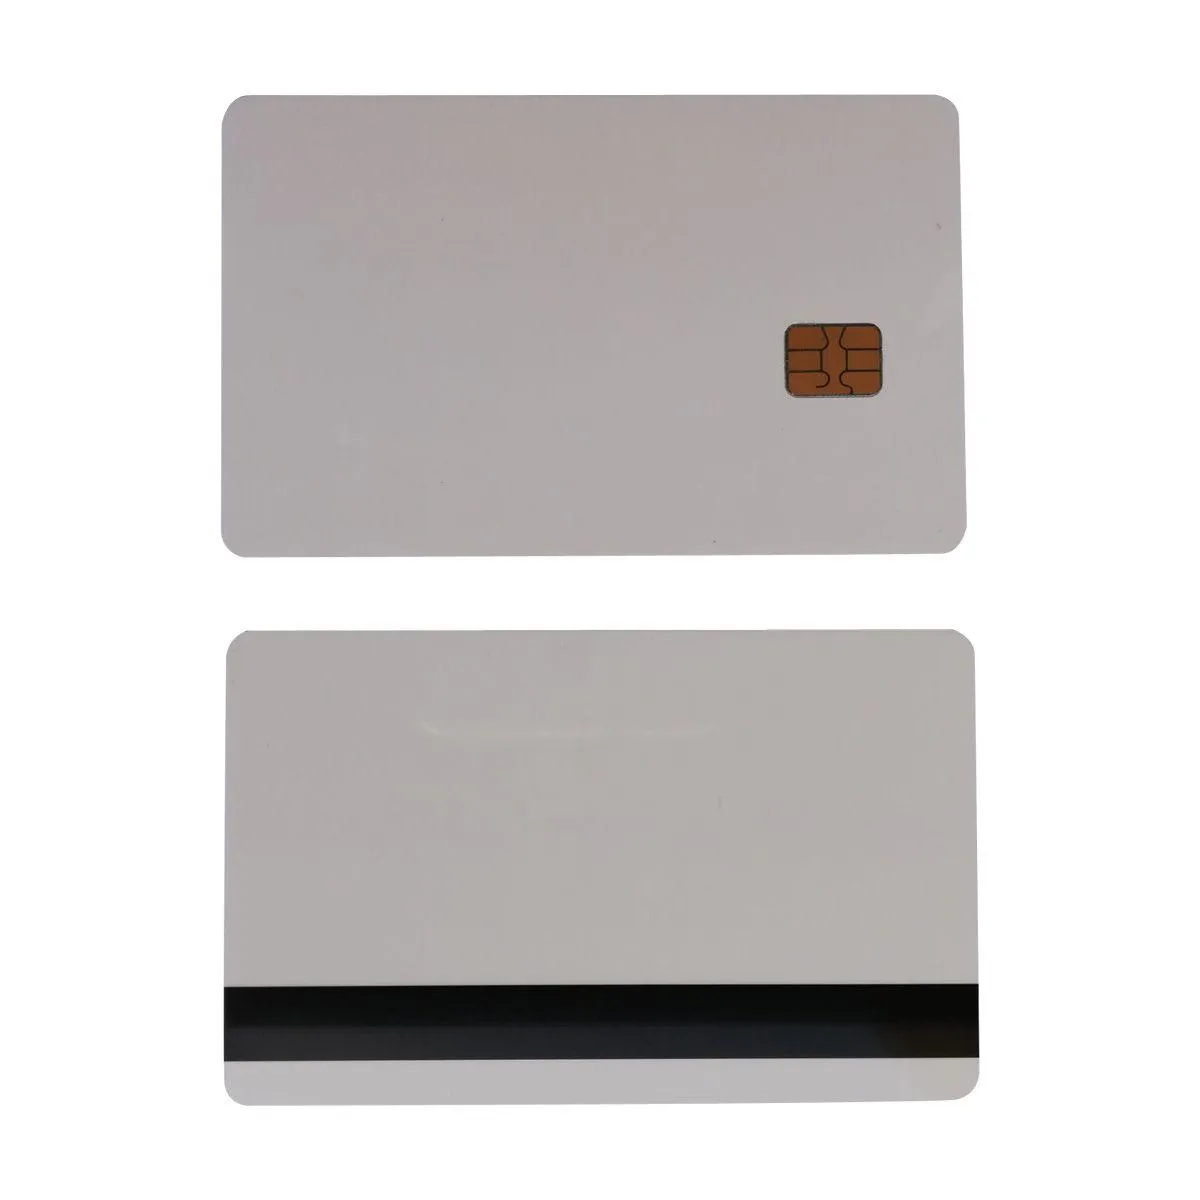 Cartão de controle de acesso 10pcs branco sle4442 chip de contato pvc inteligente com 8.4mm hico tarja magnética entrega de segurança vigilância em dh6b7